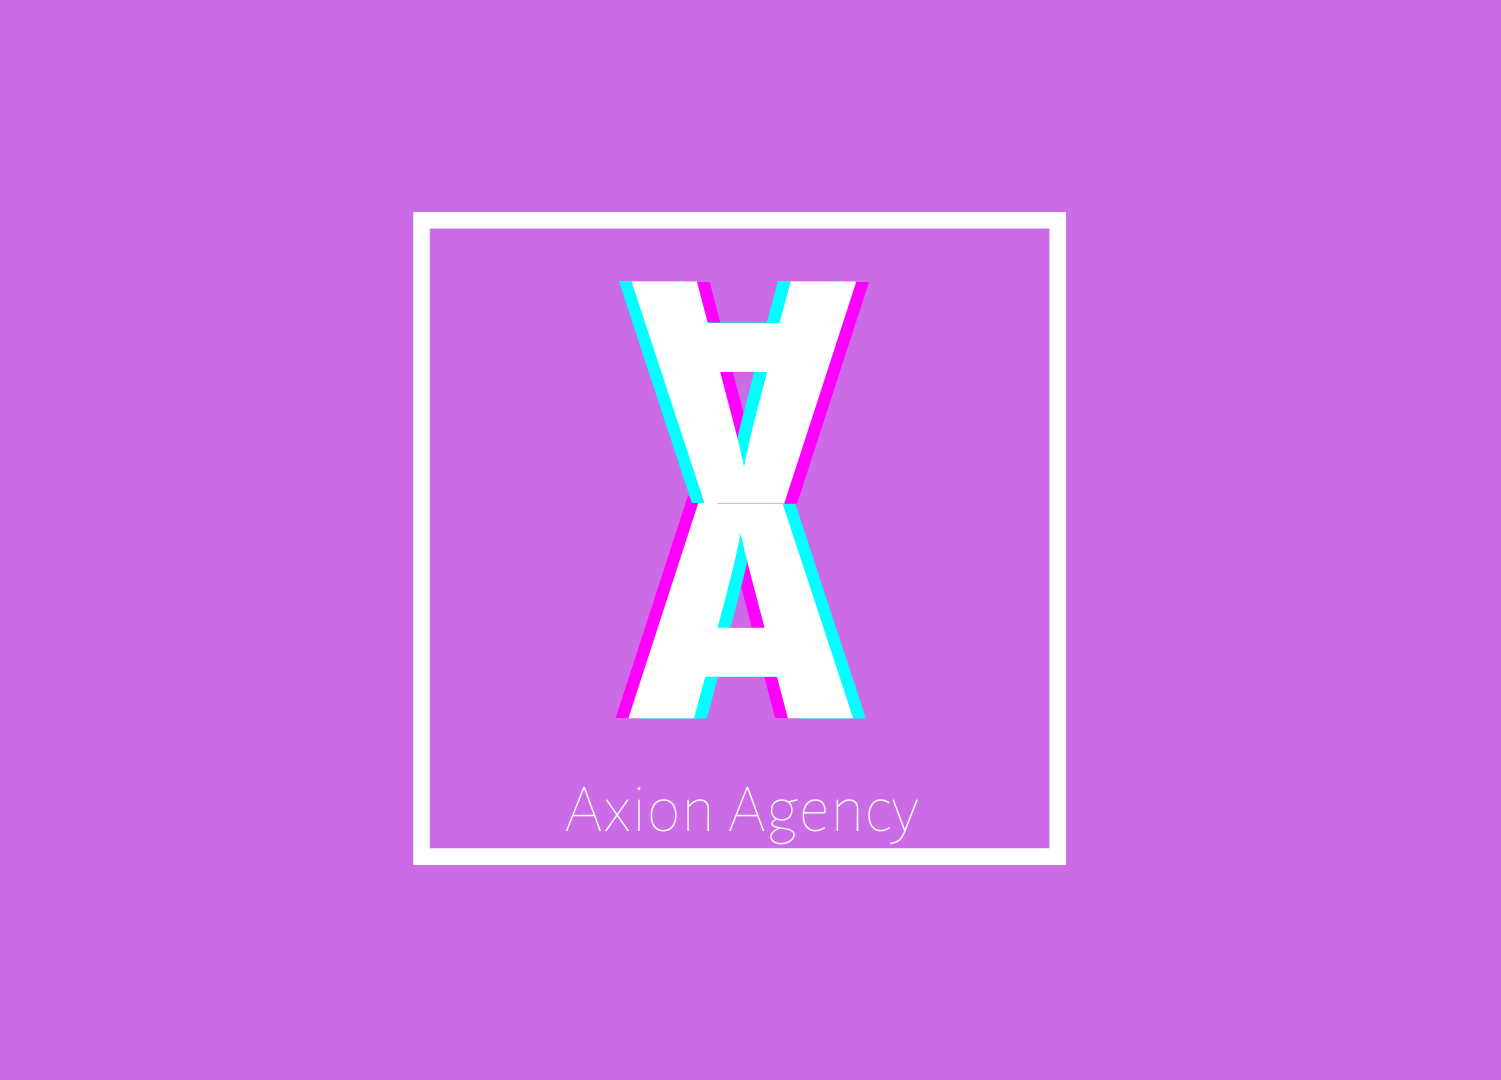 Axion Agency